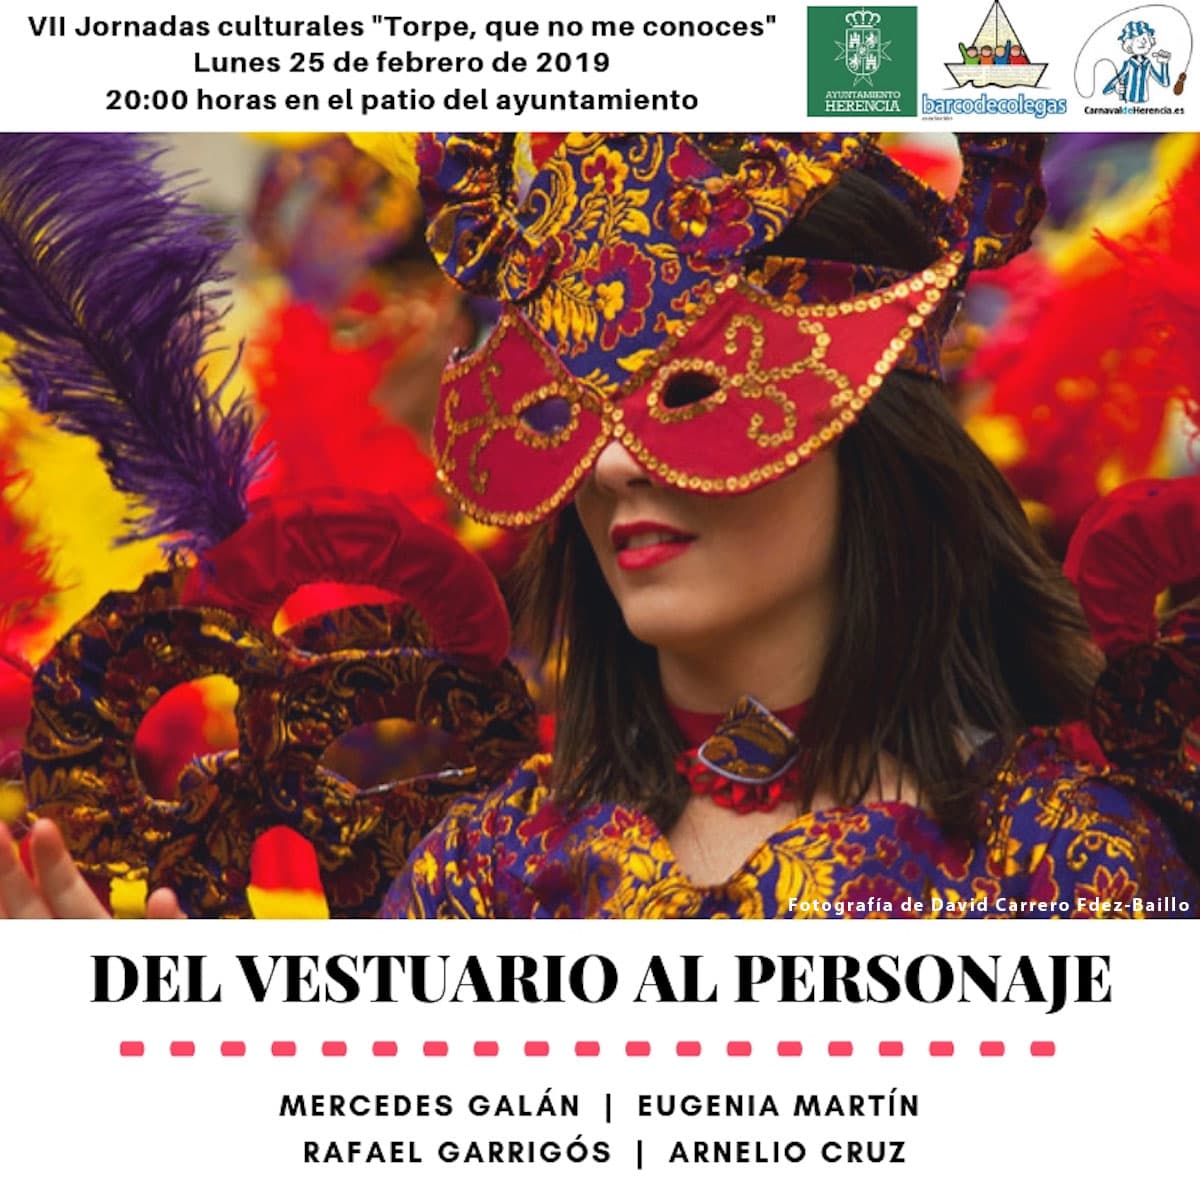 “Del vestuario al personaje” en las Jornadas Culturales del Carnaval de Herencia